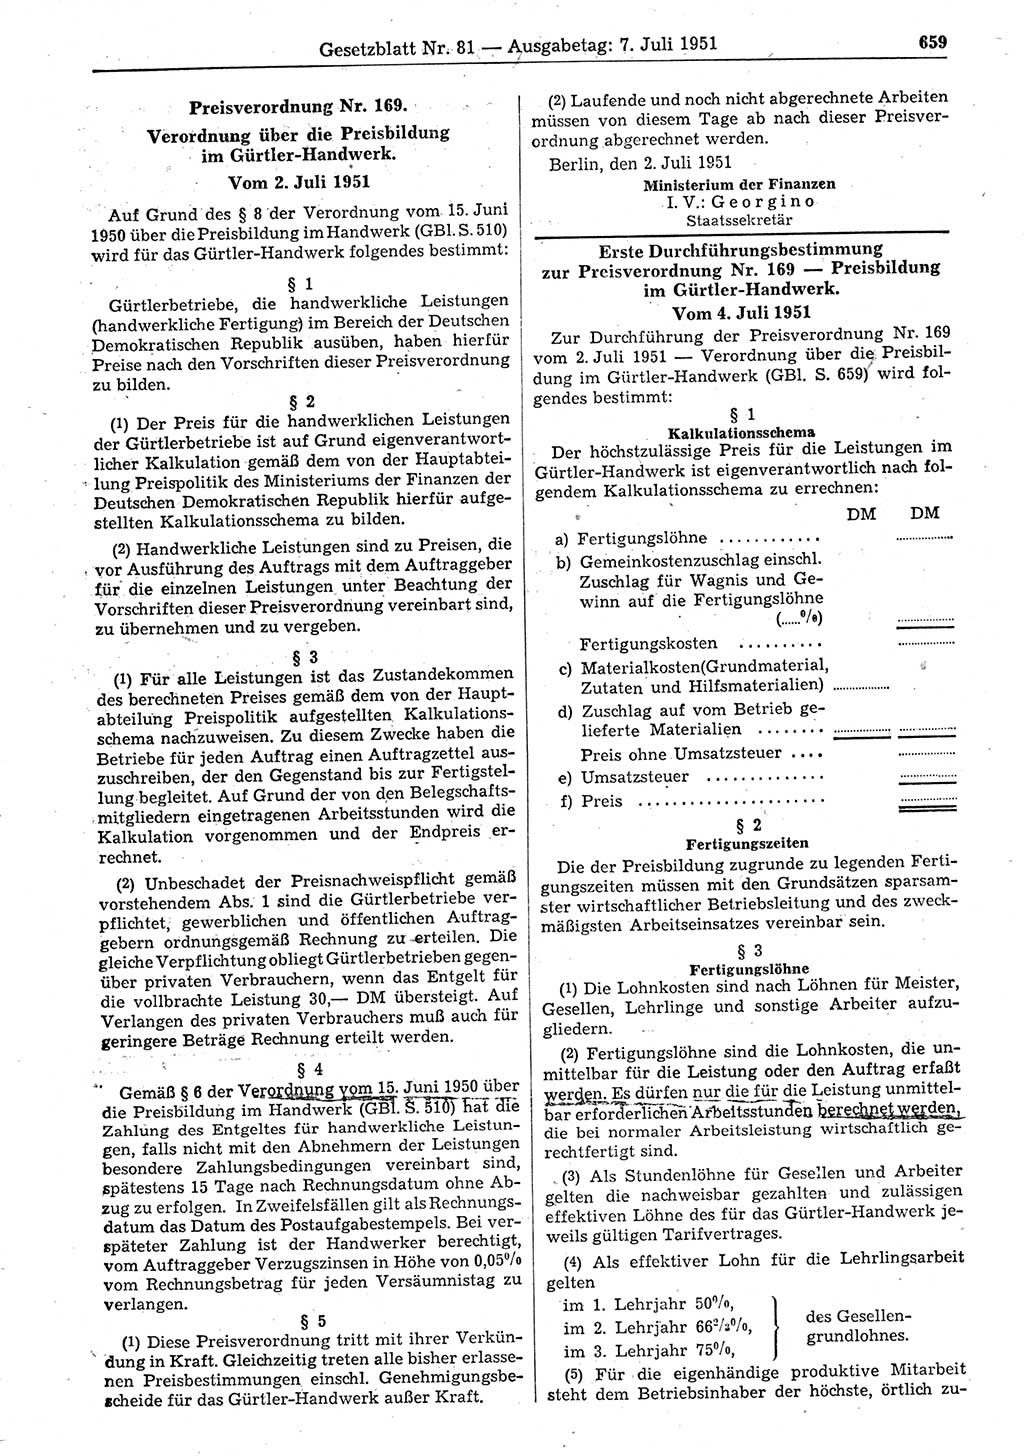 Gesetzblatt (GBl.) der Deutschen Demokratischen Republik (DDR) 1951, Seite 659 (GBl. DDR 1951, S. 659)